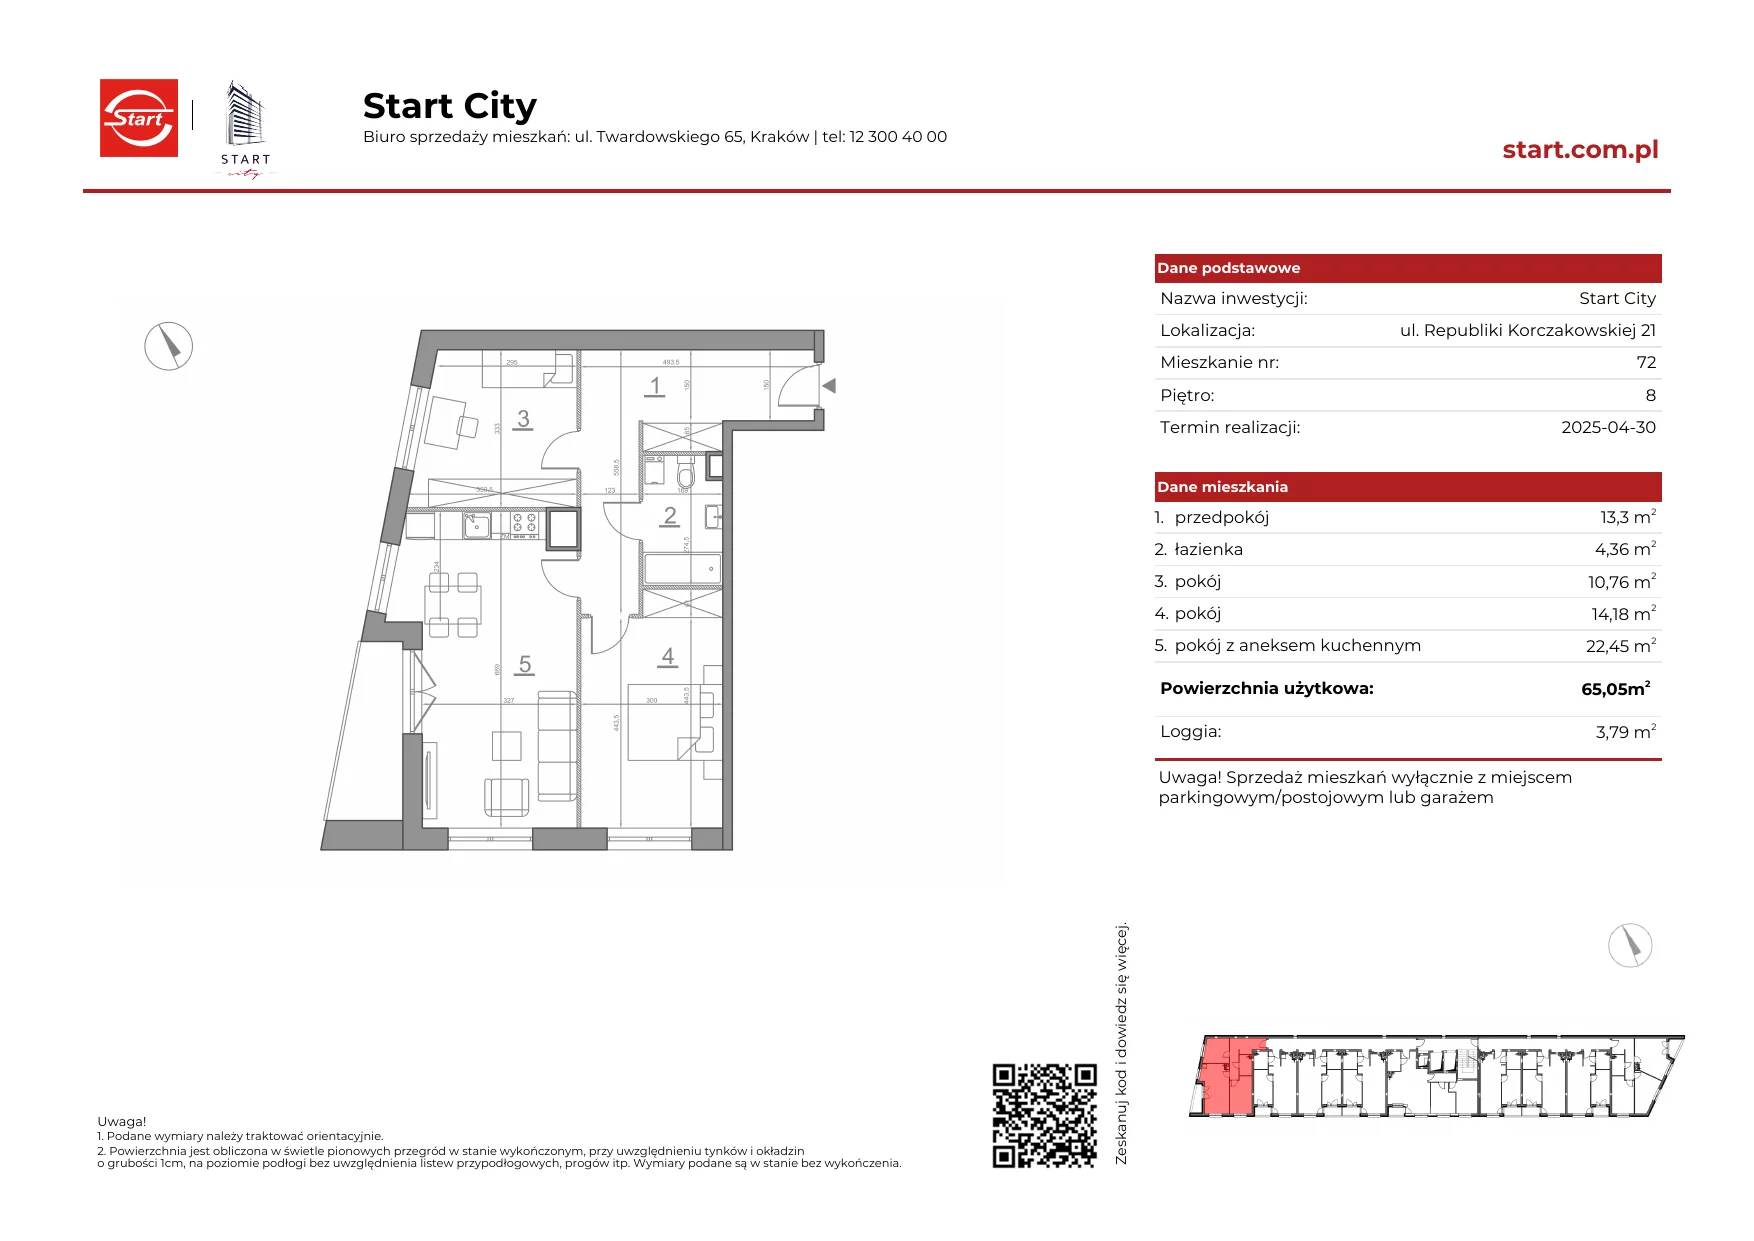 Mieszkanie 65,05 m², piętro 8, oferta nr 21/72, Start City, Kraków, Bieżanów-Prokocim, ul. Republiki Korczakowskiej 21